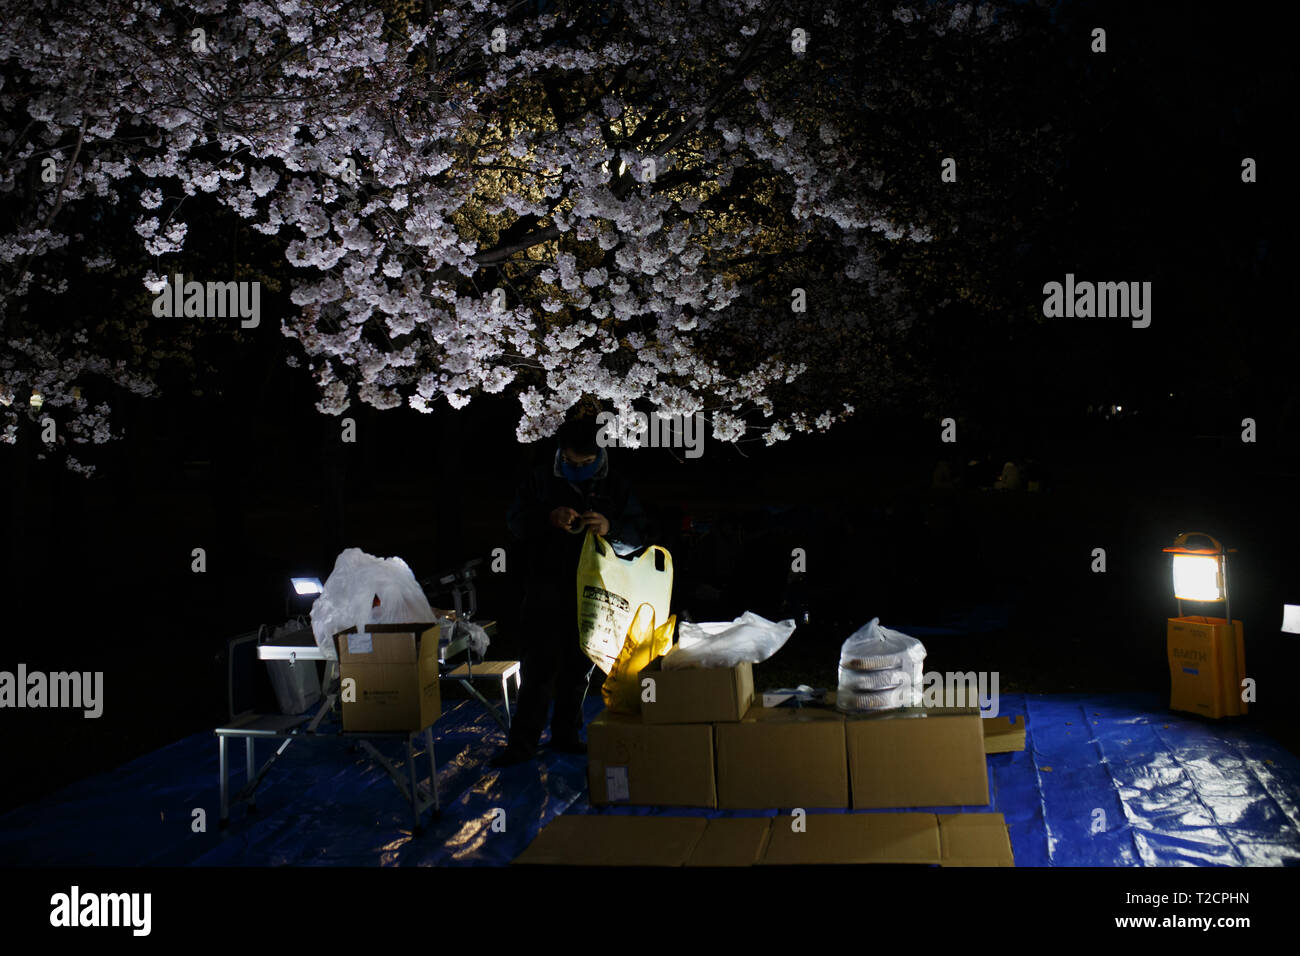 Une personne vu la préparation de la fleur de cerisier visites de travail à un parc, Nagoya, Aichi Prefecture, Japan. La fleur de cerisier également connu sous le nom de Sakura au Japon habituellement son sommet en mars ou début avril au printemps. Le Sakura est la fleur nationale du Japon et d'apprécier les cerisiers en fleurs est une vieille coutume japonaise. Banque D'Images